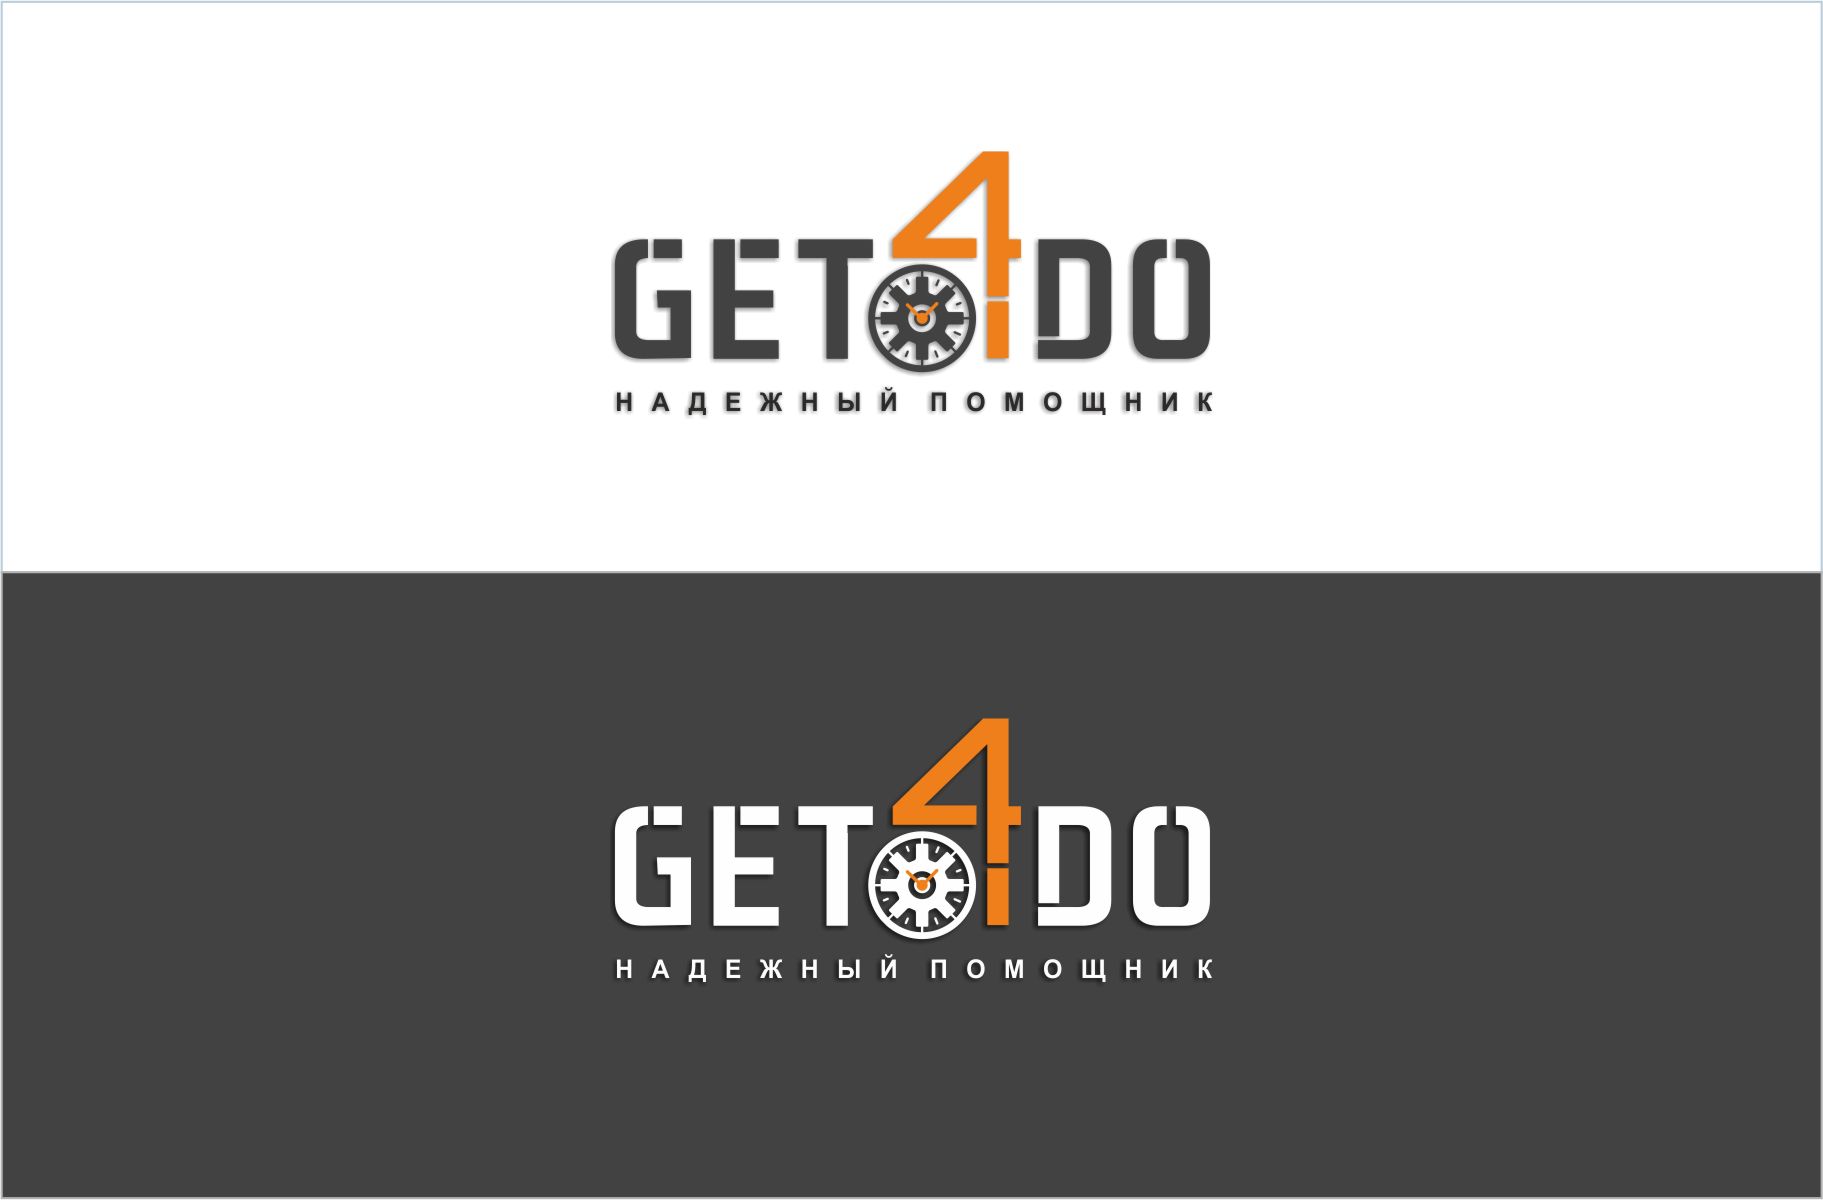 Логотип для Get4do  (ГетФоДу  возьми чтобы сделать) - дизайнер SobolevS21